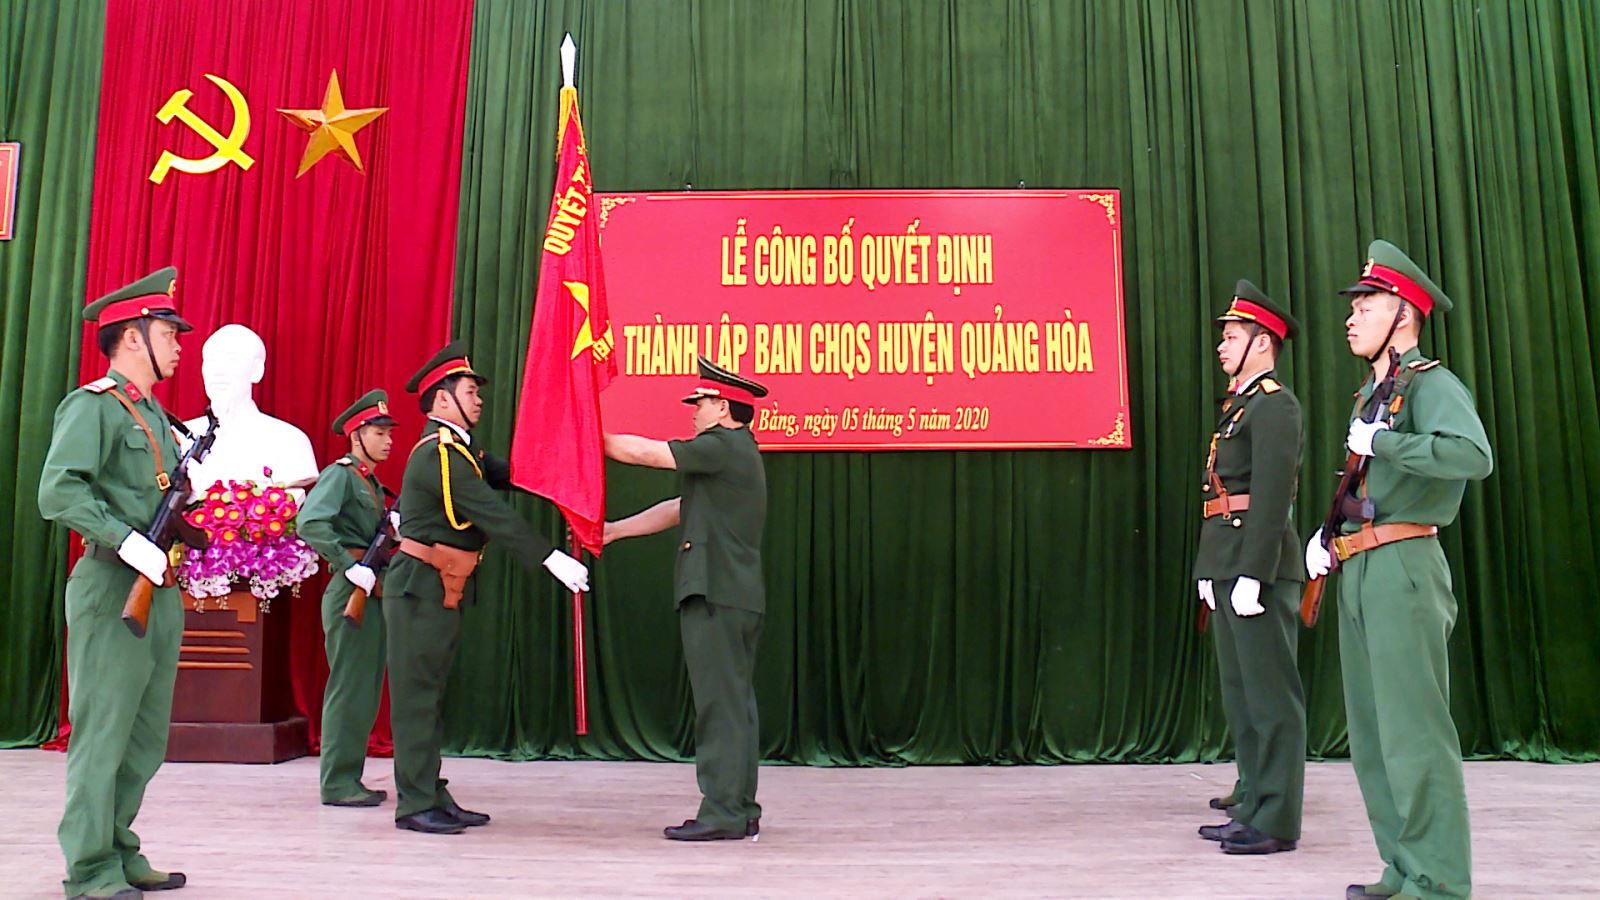 Ban CHQS huyện Quảng Hòa, tỉnh Cao Bằng: Công bố quyết định thành ...